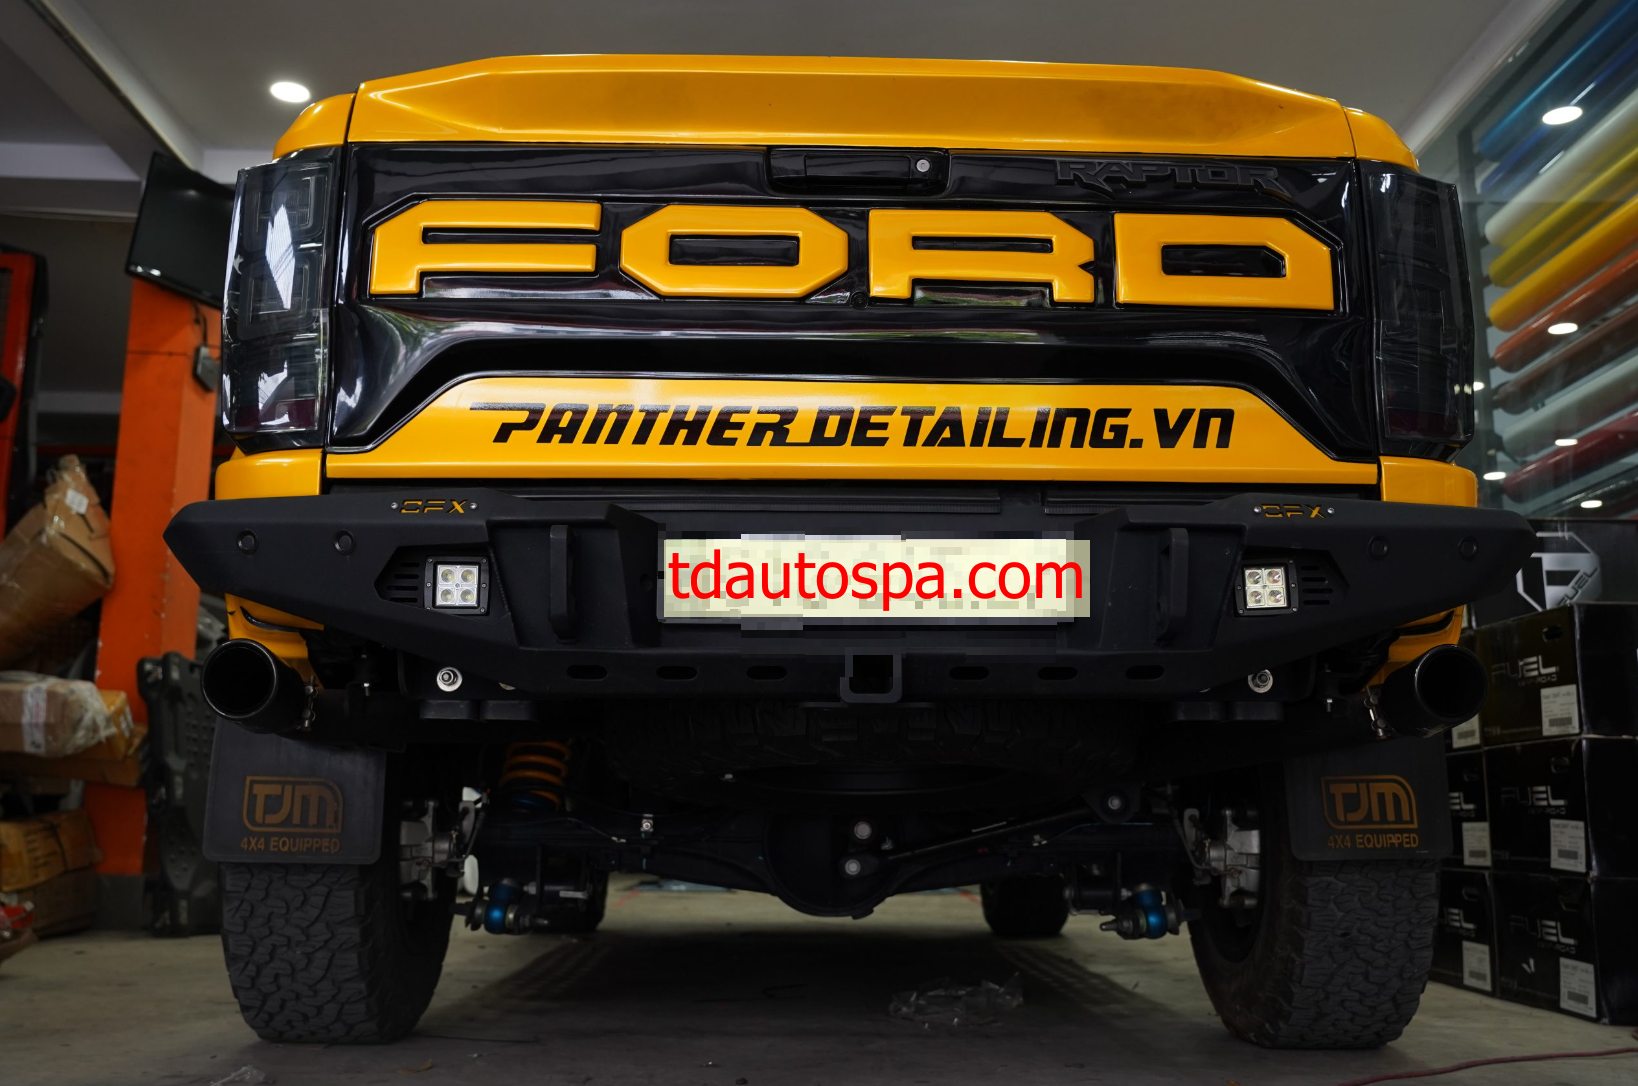 Cản sau Offroad X cho Ford Ranger Raptor